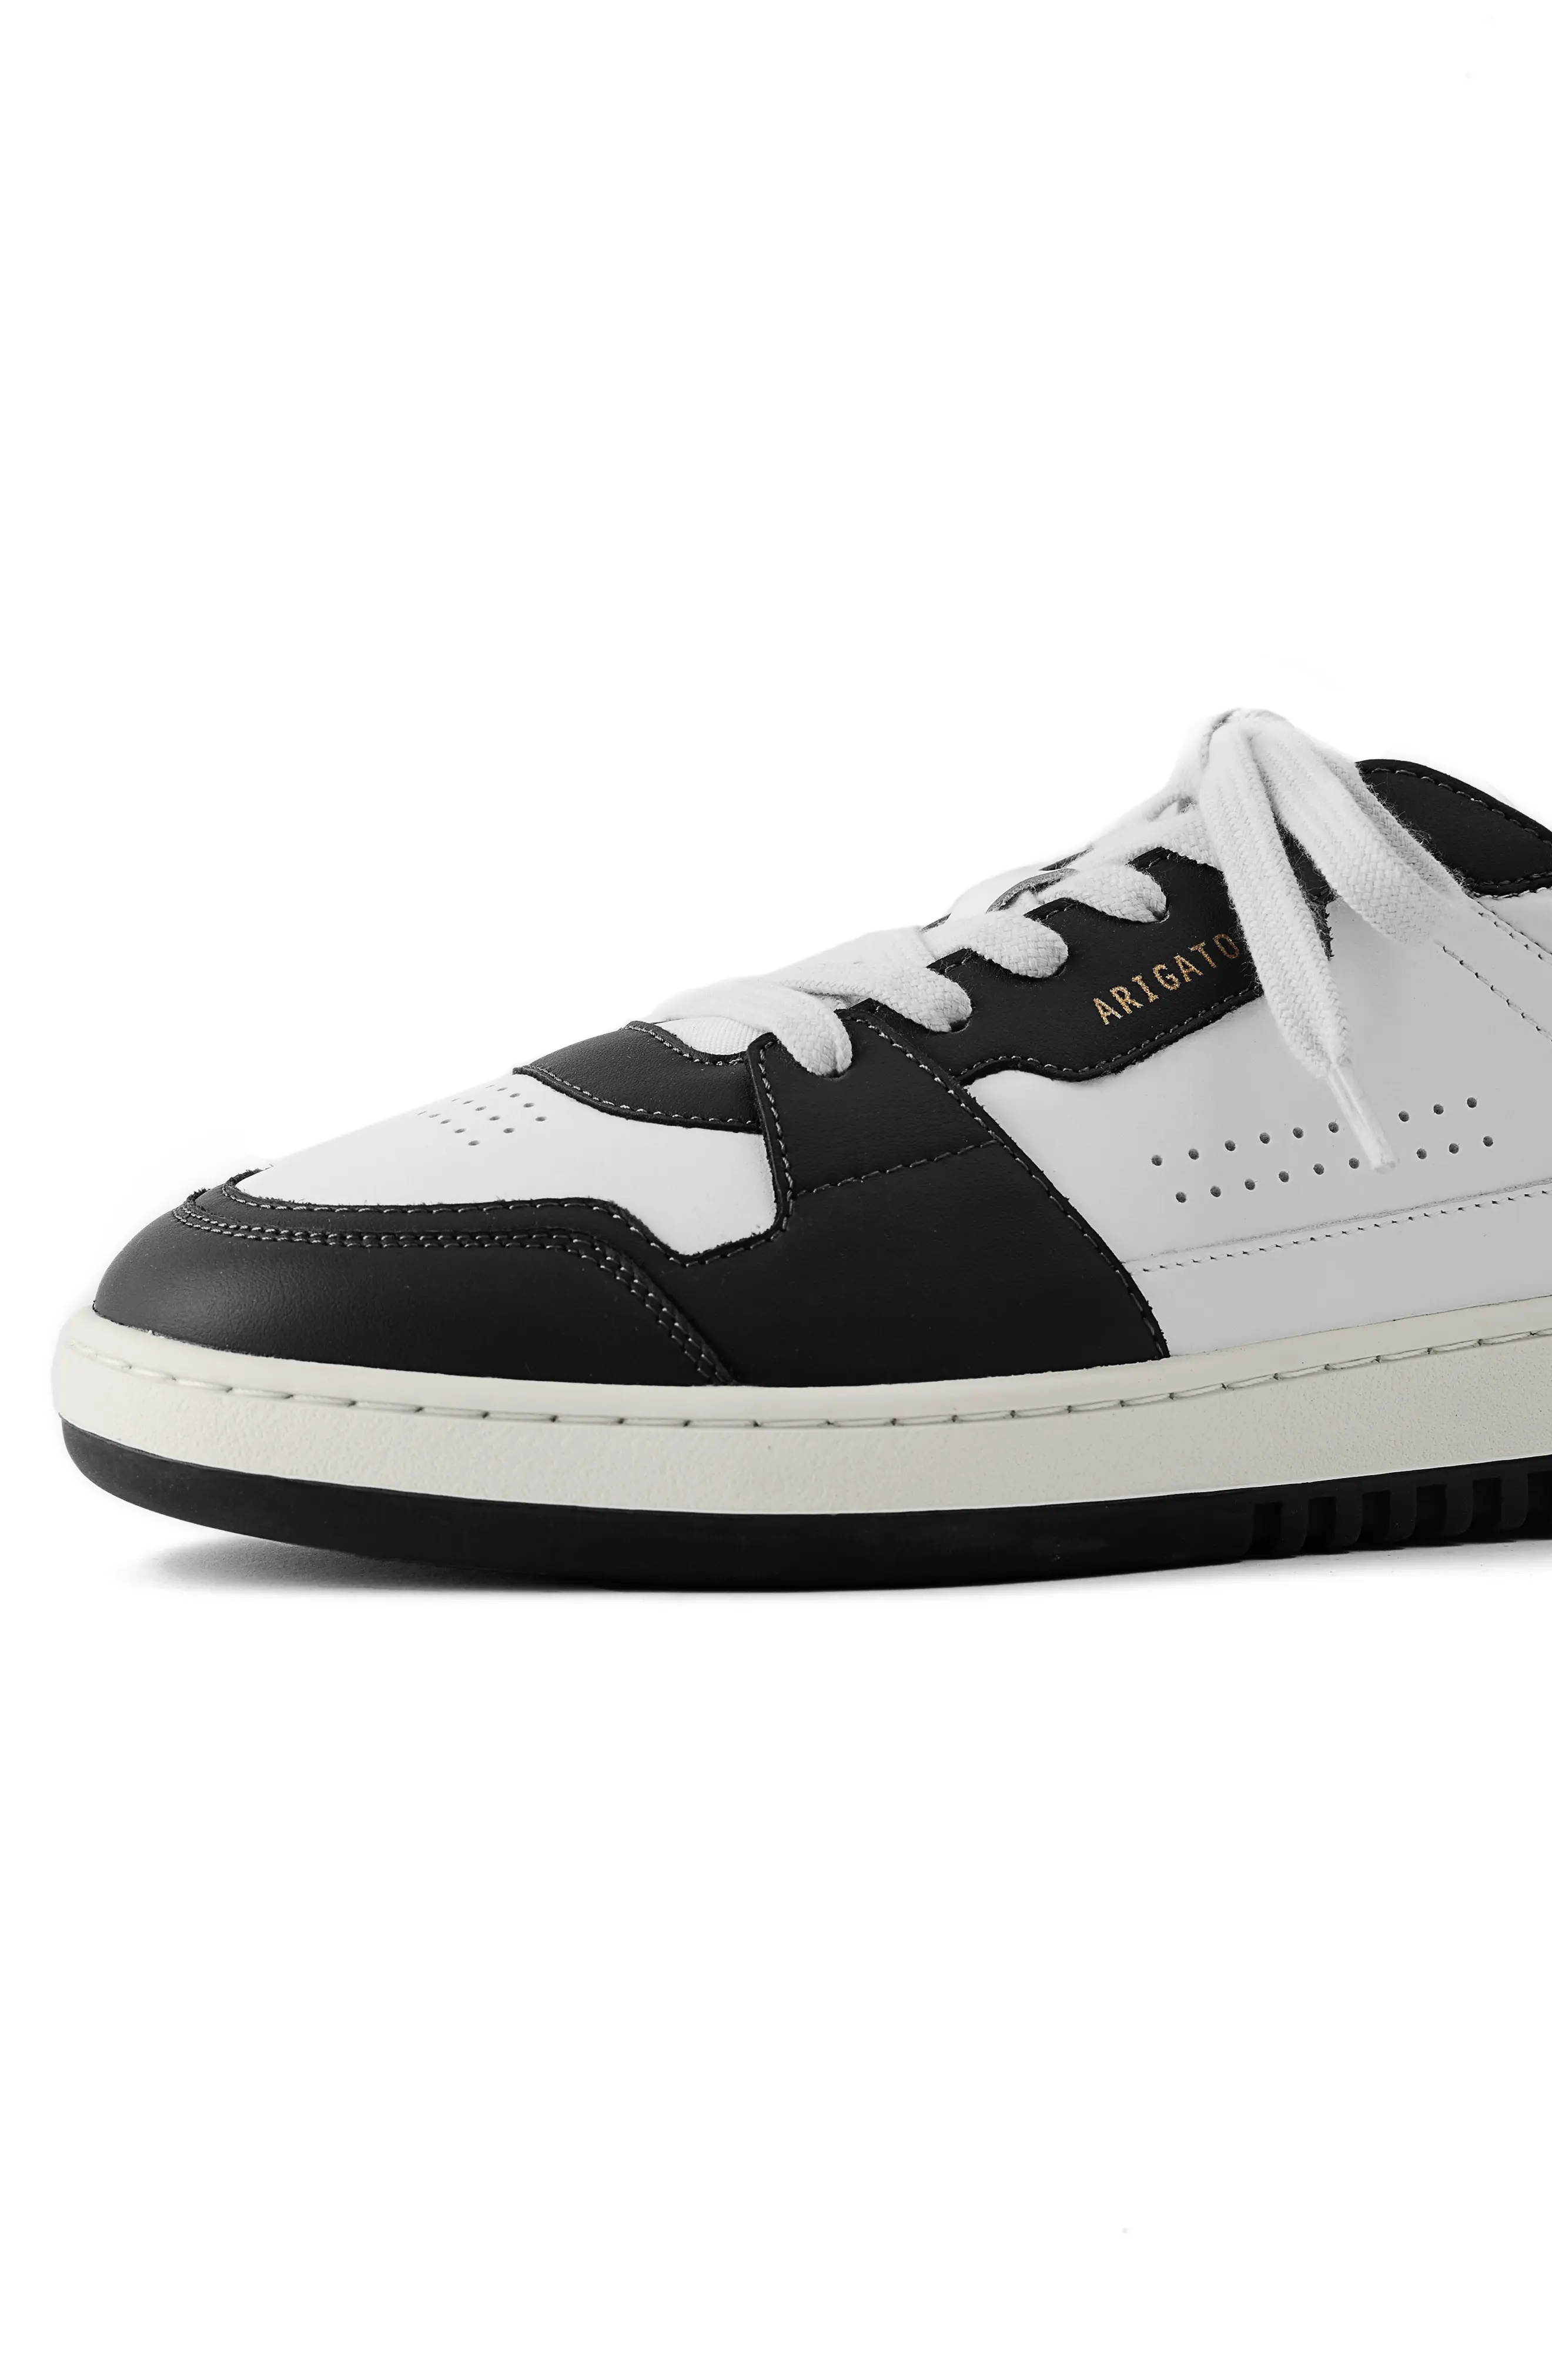 Dice Lo Sneaker in White/Black - 6